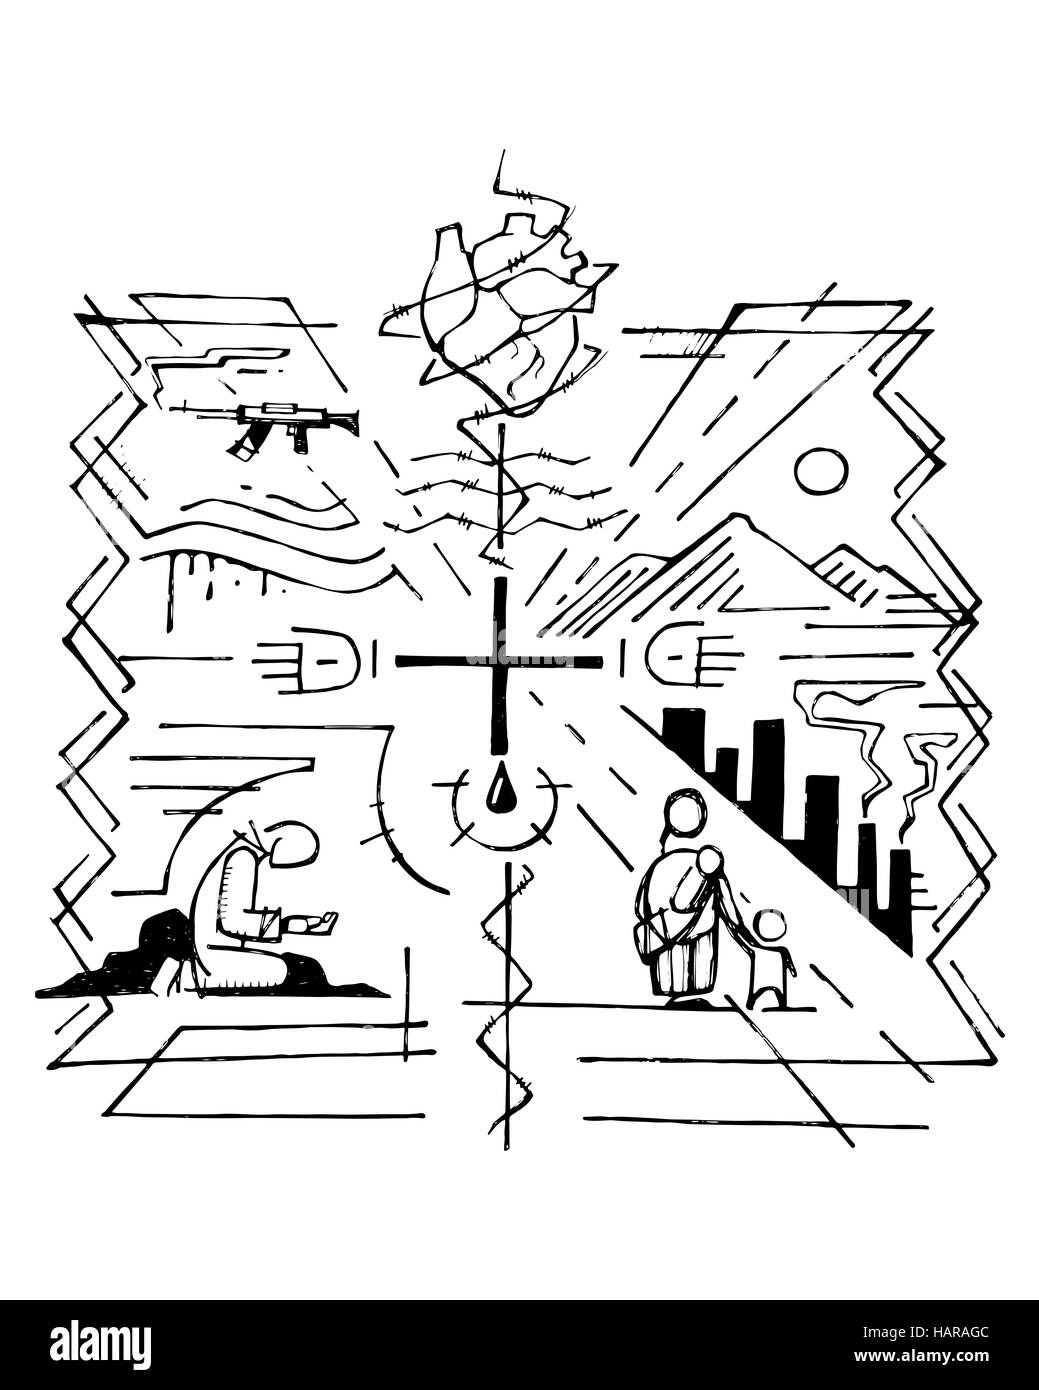 Ilustración vectorial dibujada a mano o un dibujo de una cruz y otros símbolos religiosos que representan algunos de los problemas del mundo Foto de stock